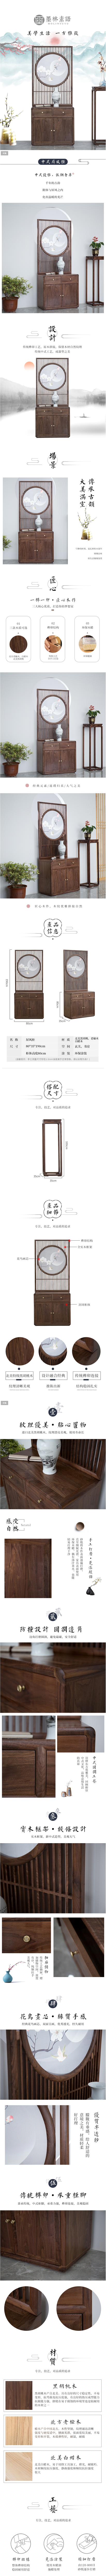 淘宝美工墨色新中式中国风室内家具详情页作品